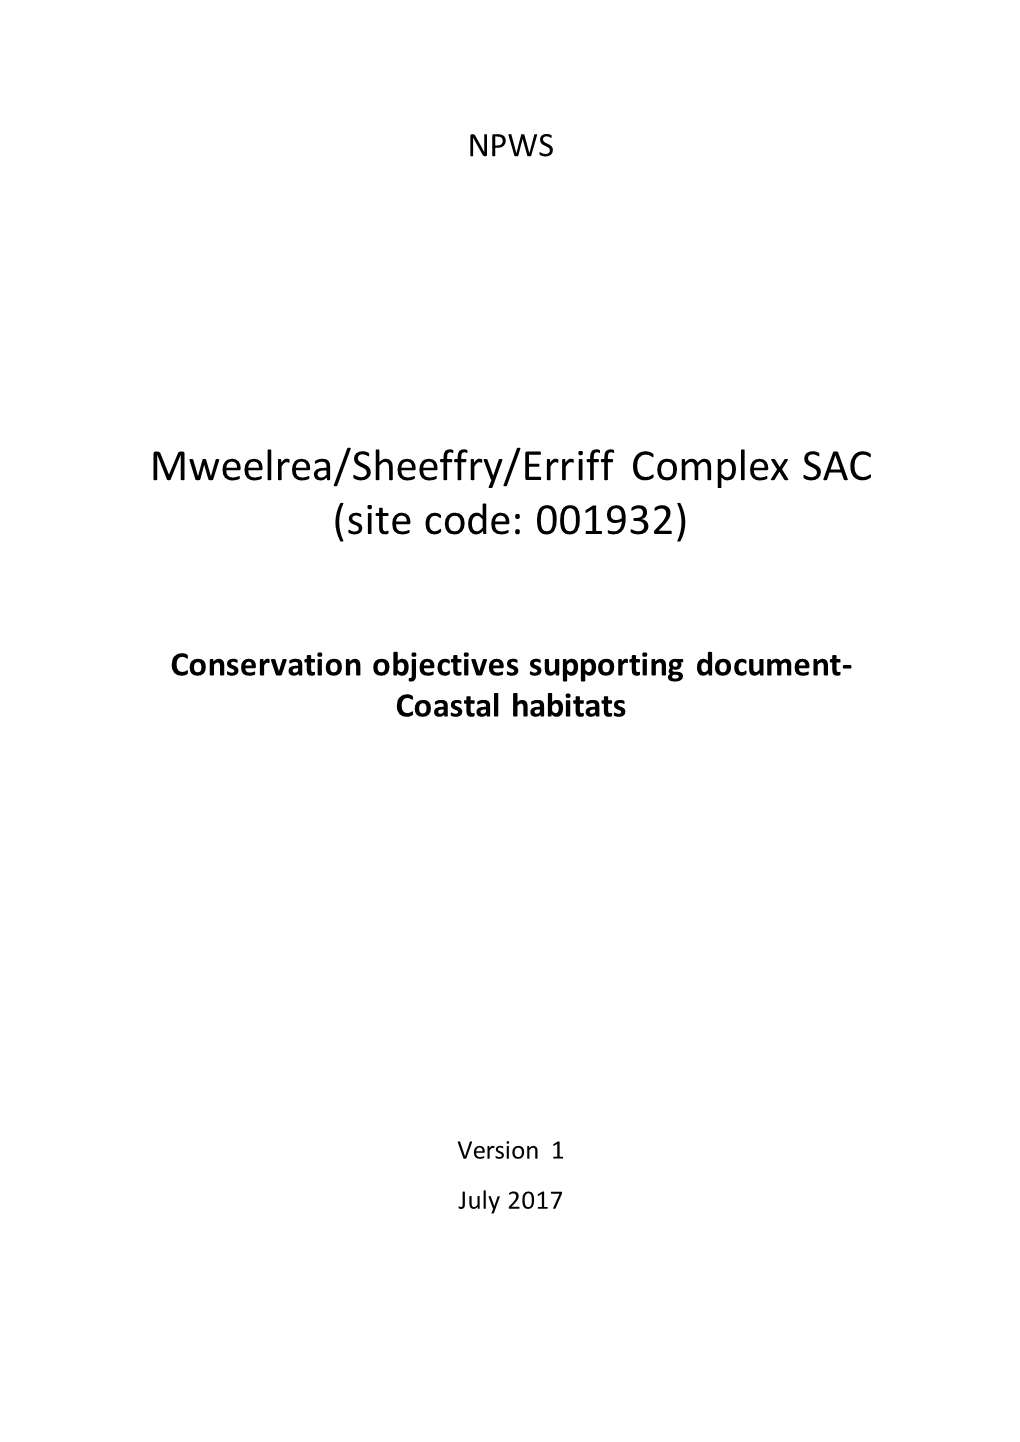 Mweelrea/Sheeffry/Erriff Complex SAC (Site Code: 001932)